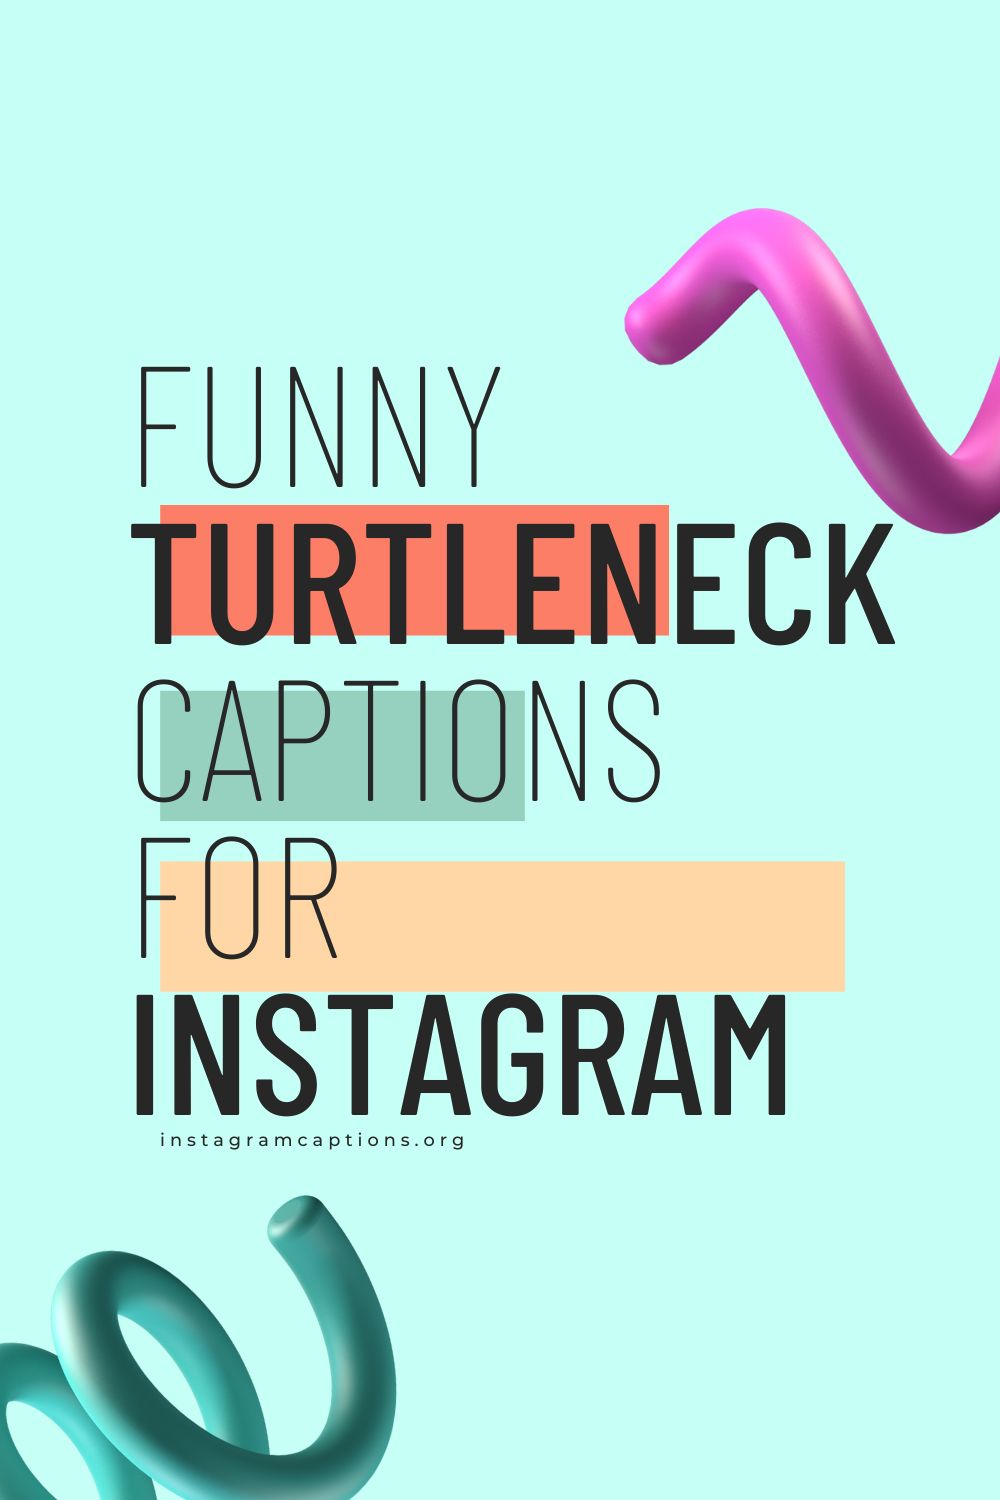 Funny Turtleneck Captions For Instagram